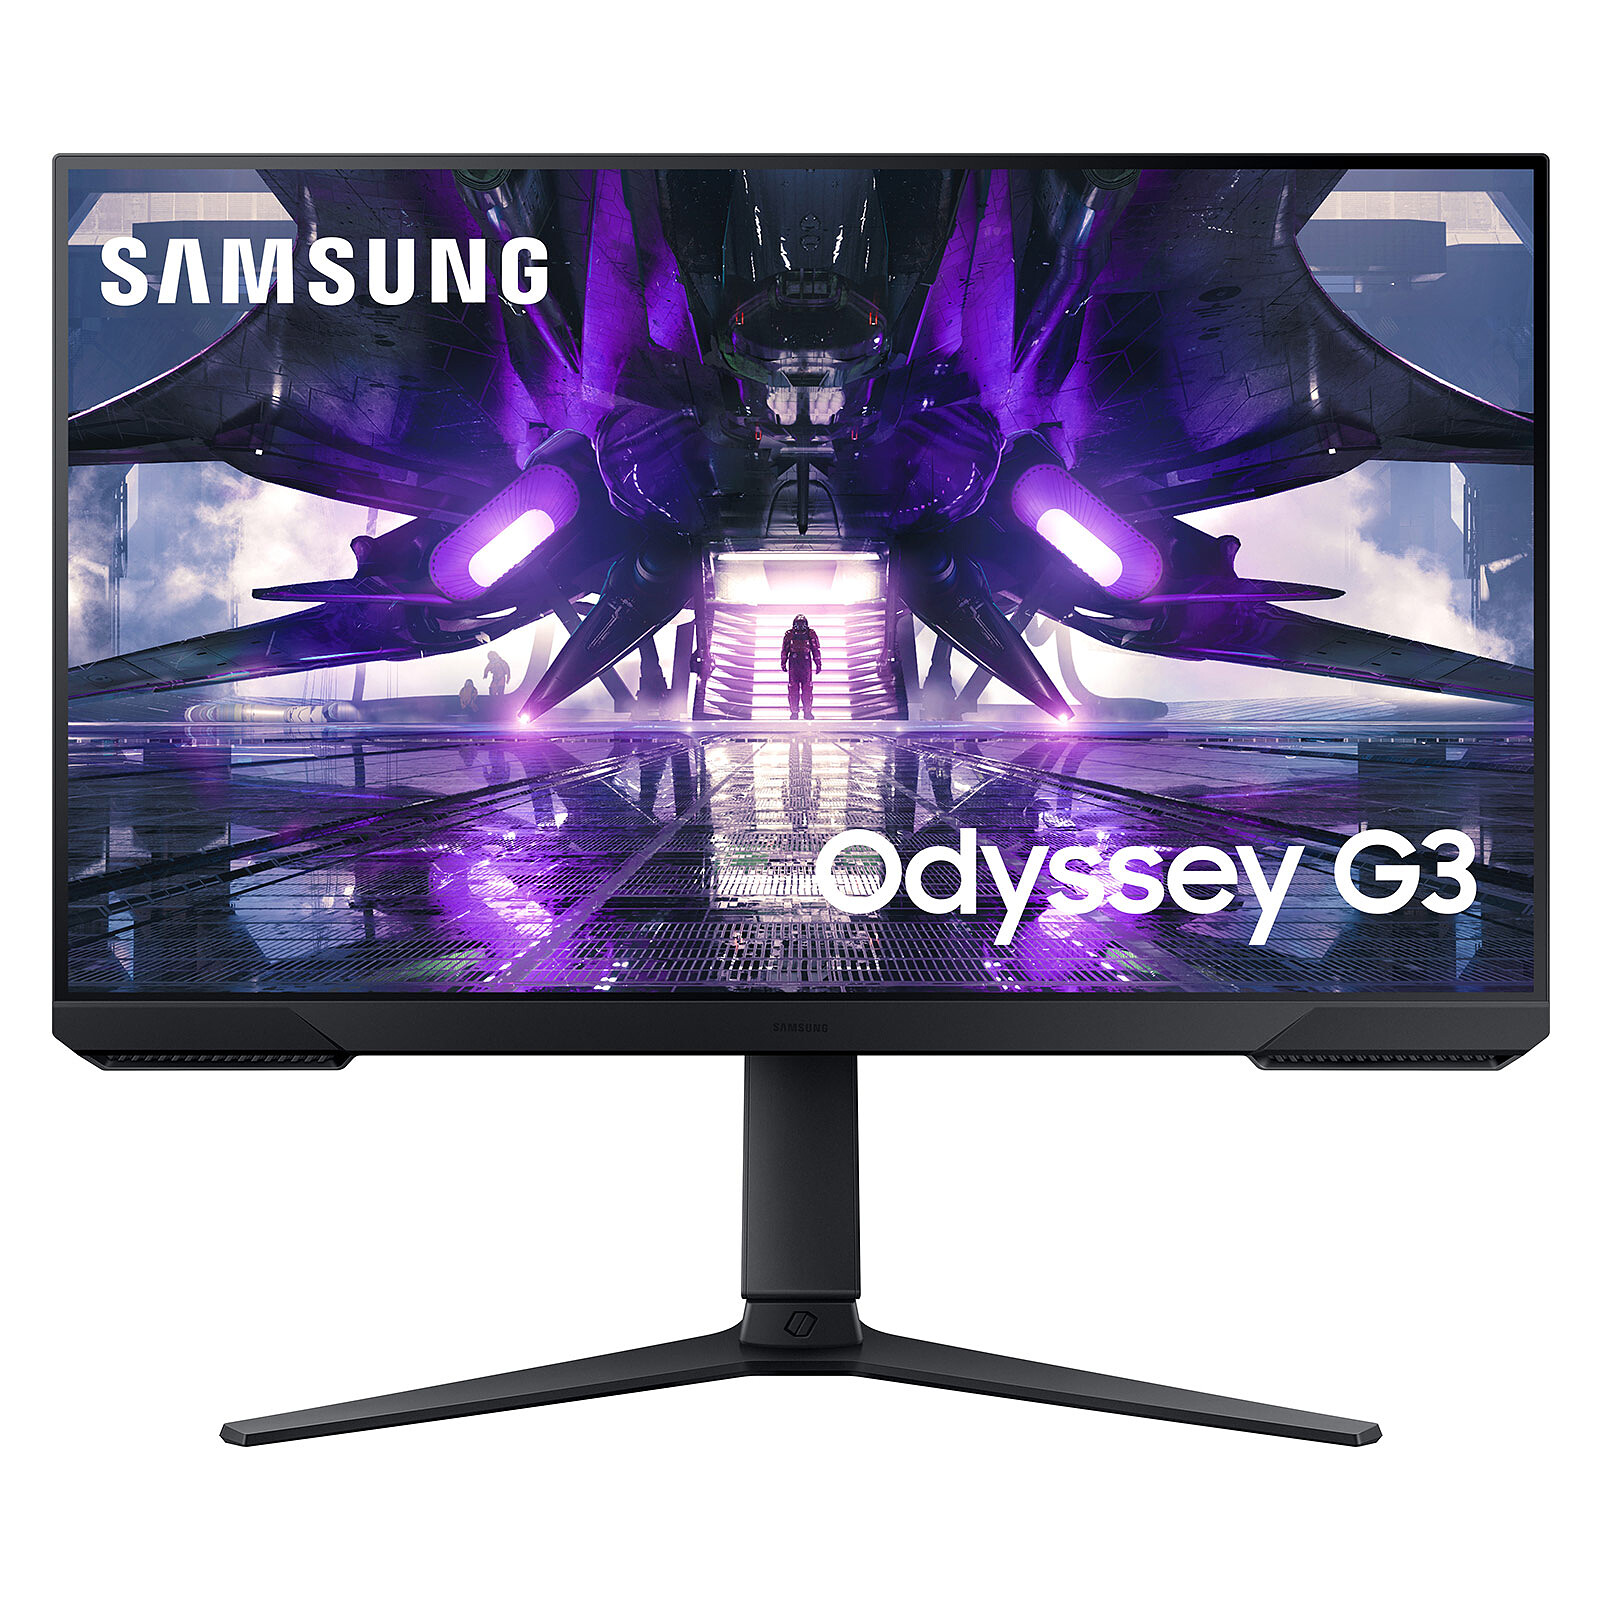 À 139 €, l'écran PC incurvé de Samsung (24 pouces, 144 Hz) est un excellent  deal